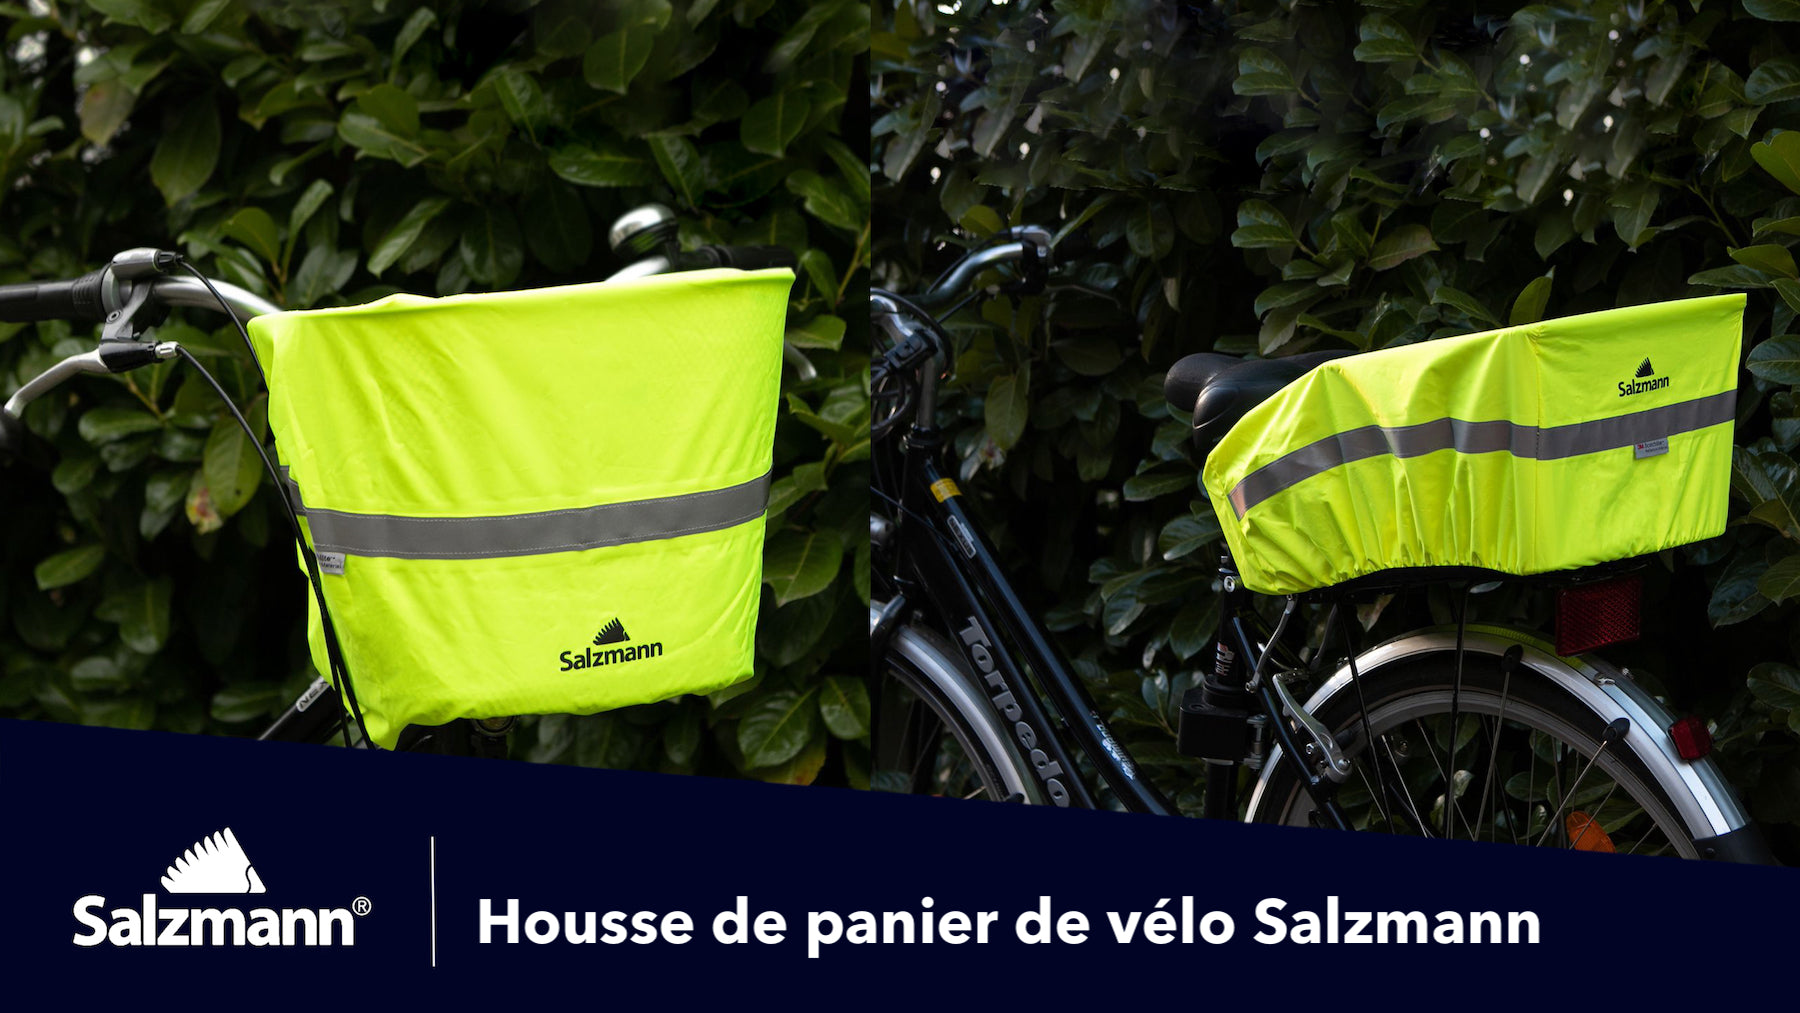 Salzmann 3M Regenschutz für Fahrradkörbe – Salzmann DE/EU